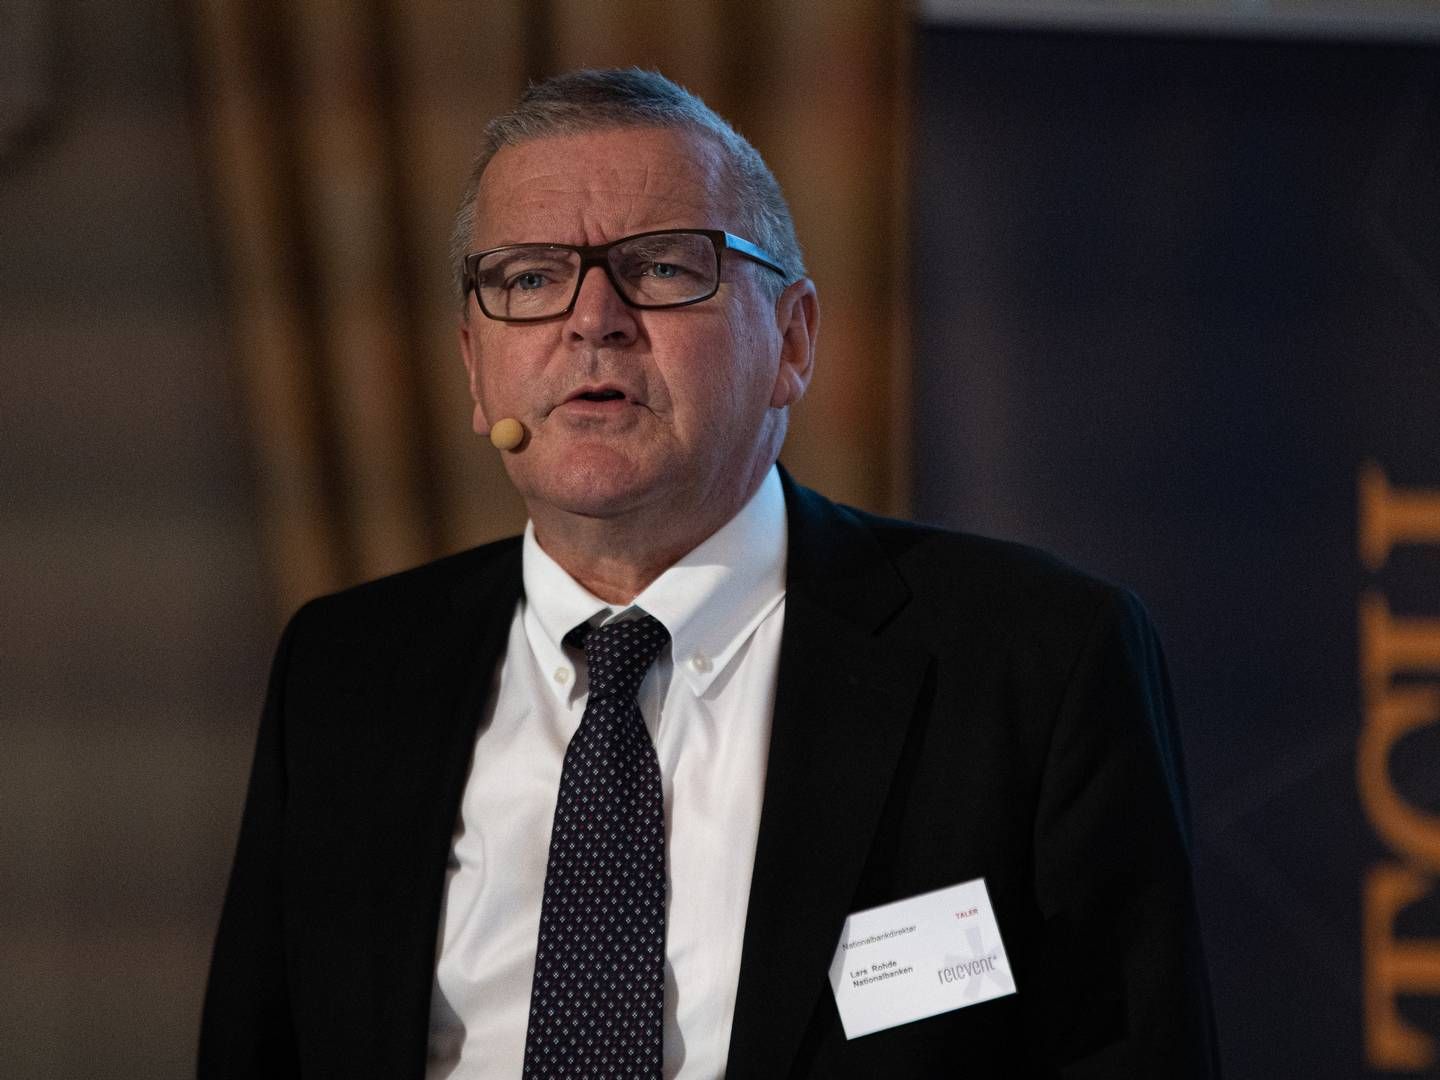 Den 1. februar hedder Danmarks Nationalbankdirektør ikke længere Lars Rohde, men Christian Kettel Thomsen. | Foto: Jan Bjarke Mindegaard